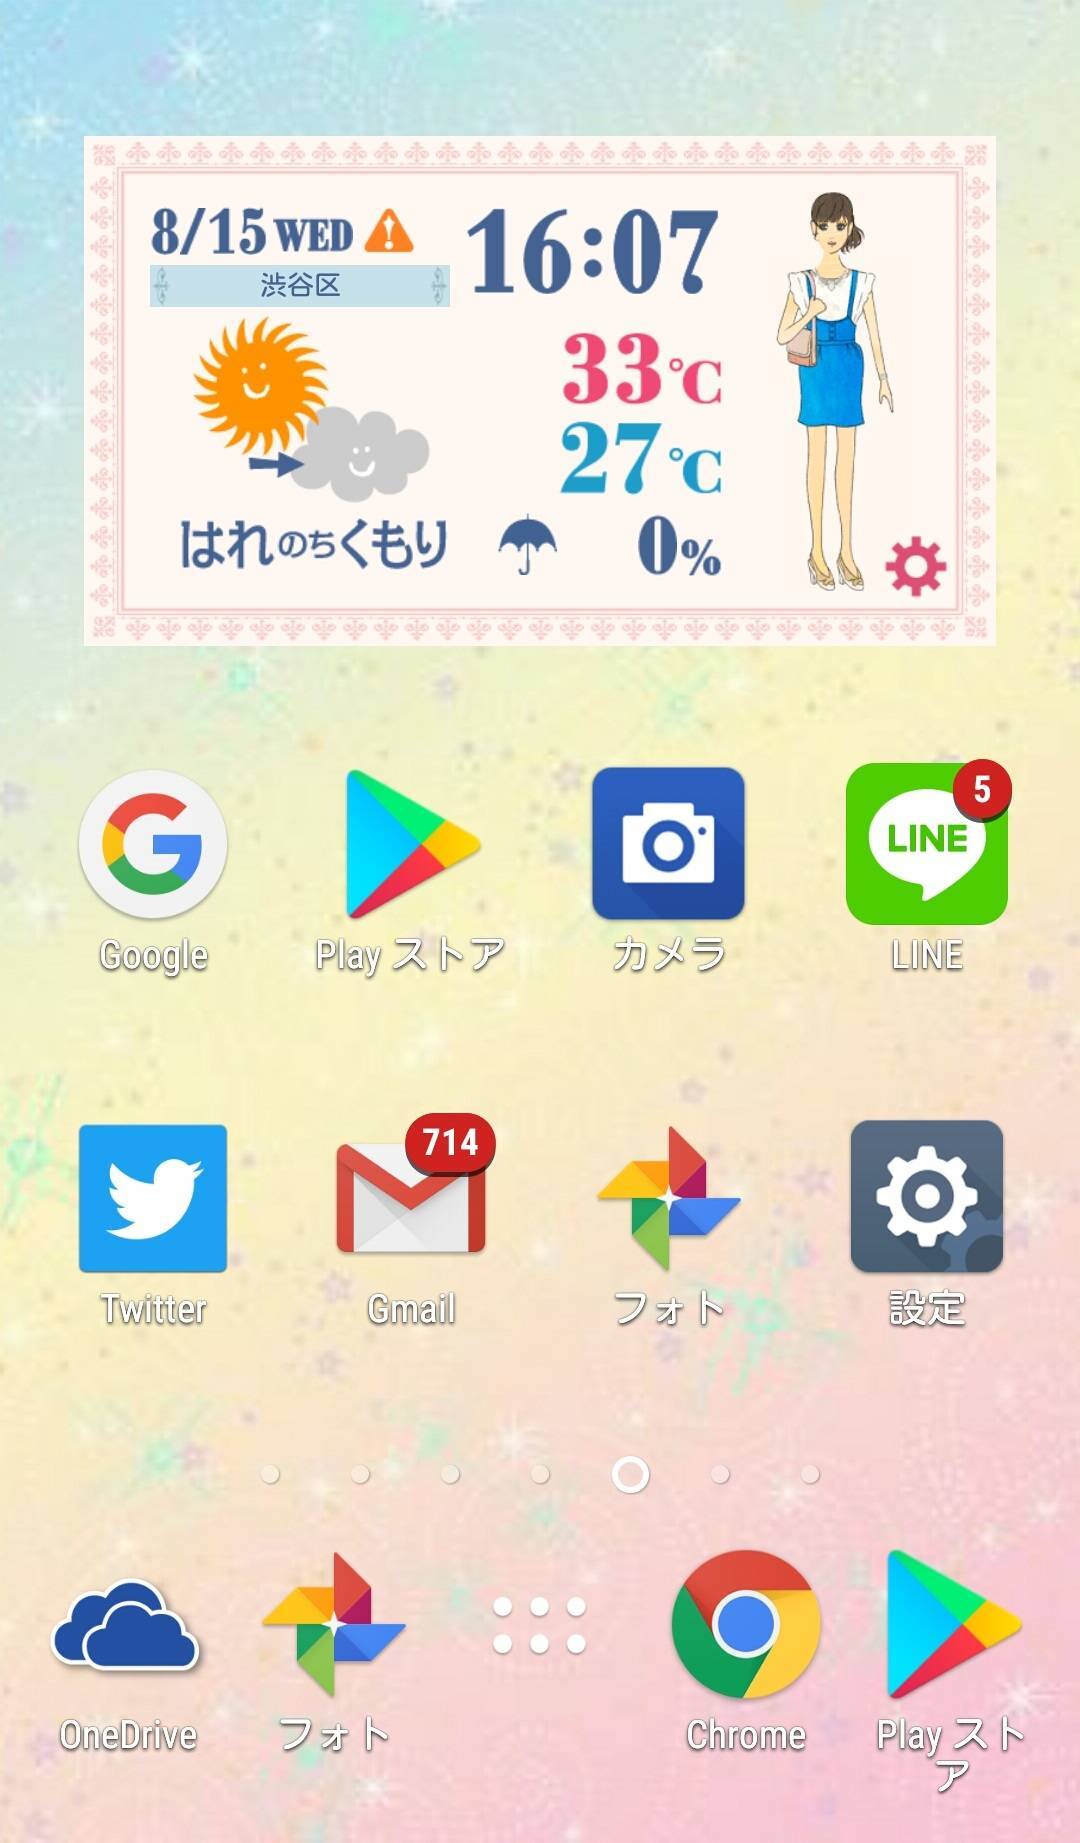 Android天気ウィジェットおすすめ6選 便利でオシャレにホーム画面を大改造の画像 13枚目 Appliv Topics